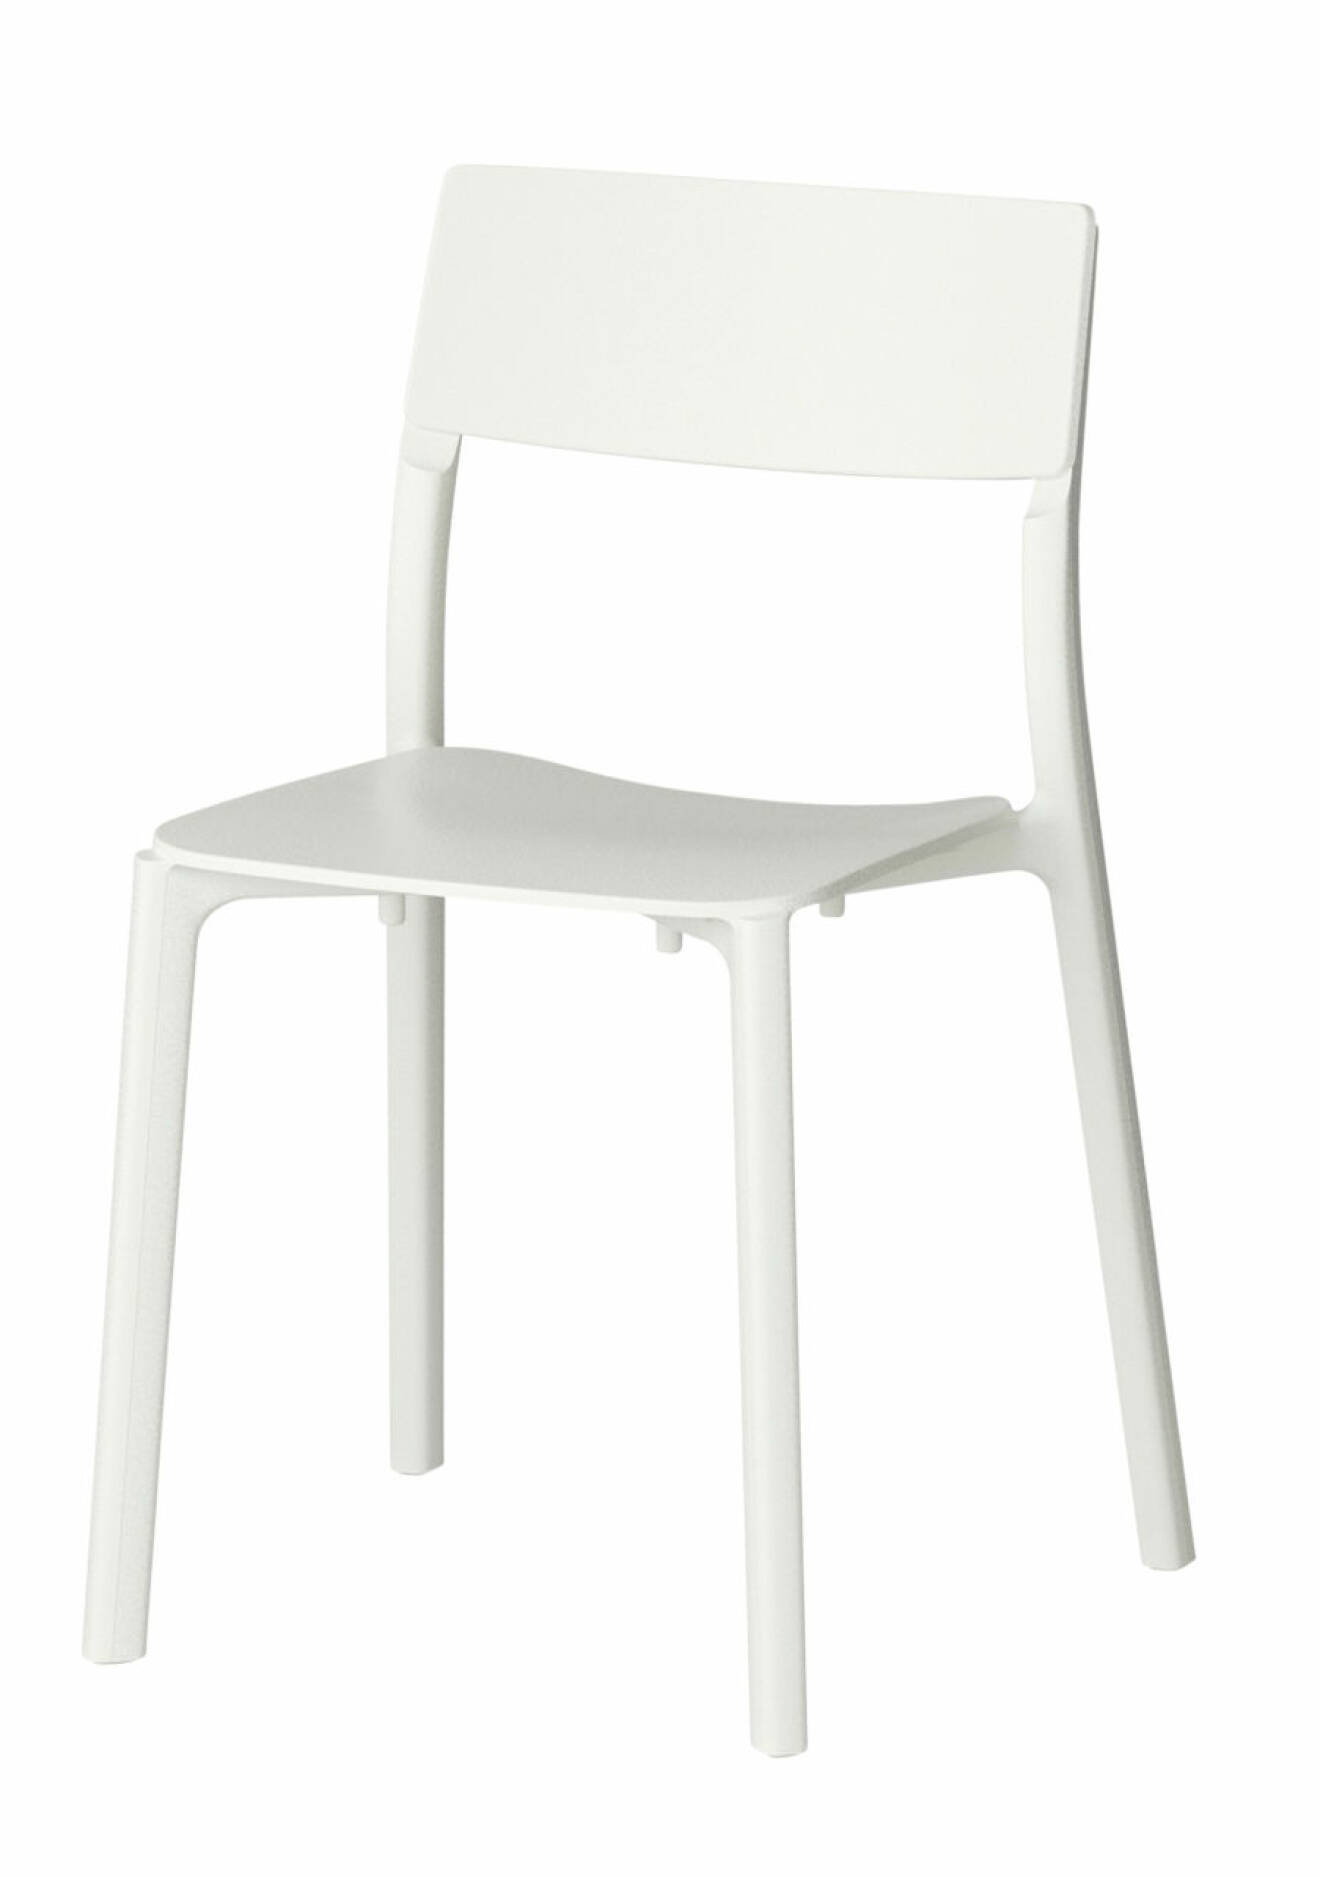 Stol från Ikea. 